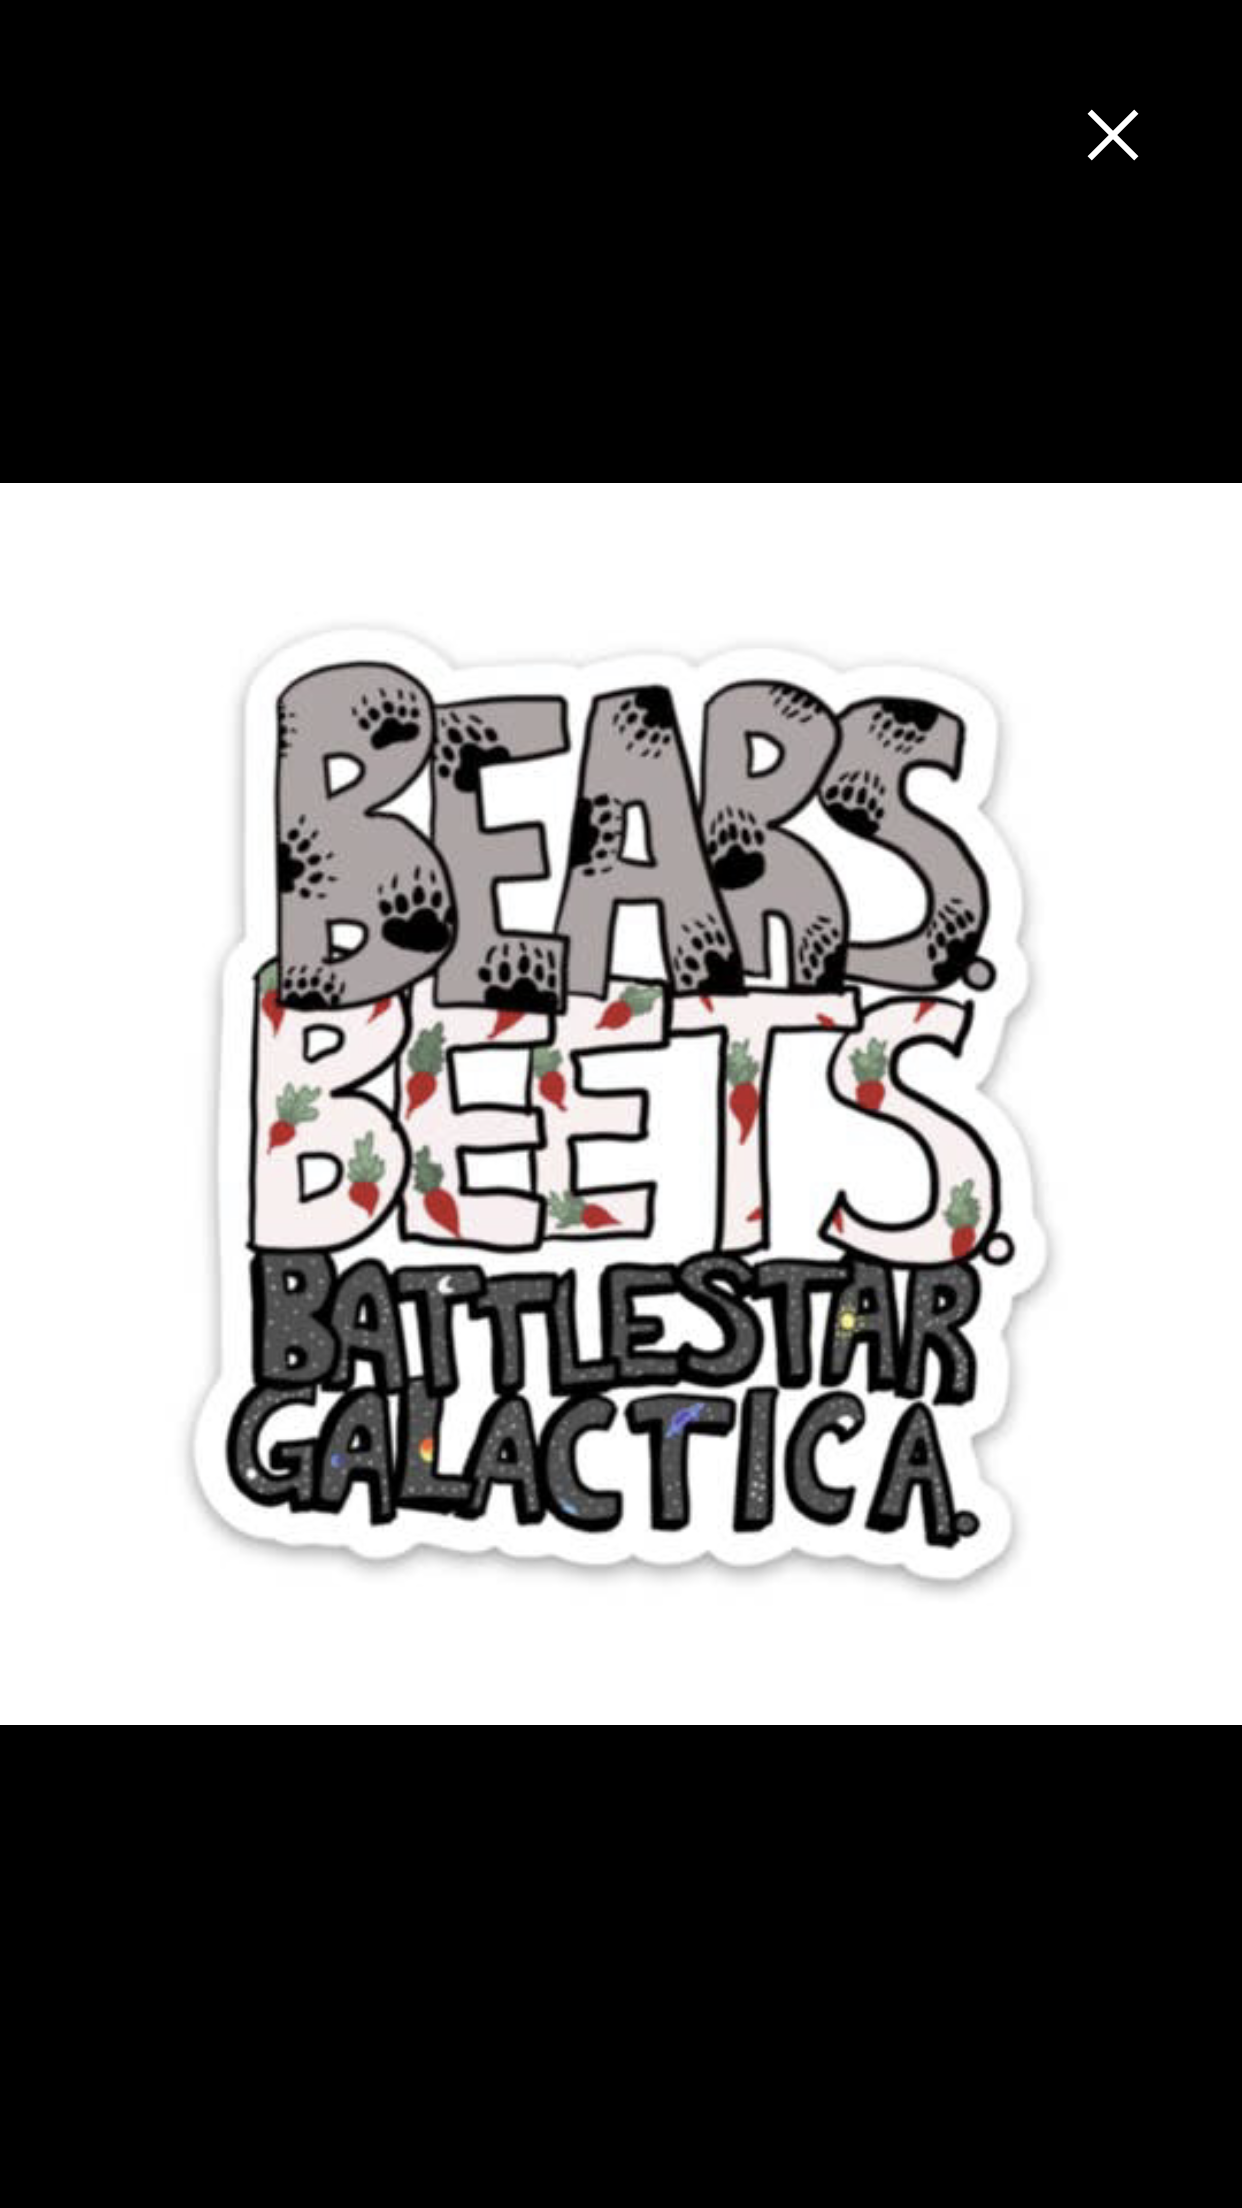 Bears Beets Battlestar Galactica - Office Fan Art Sticker